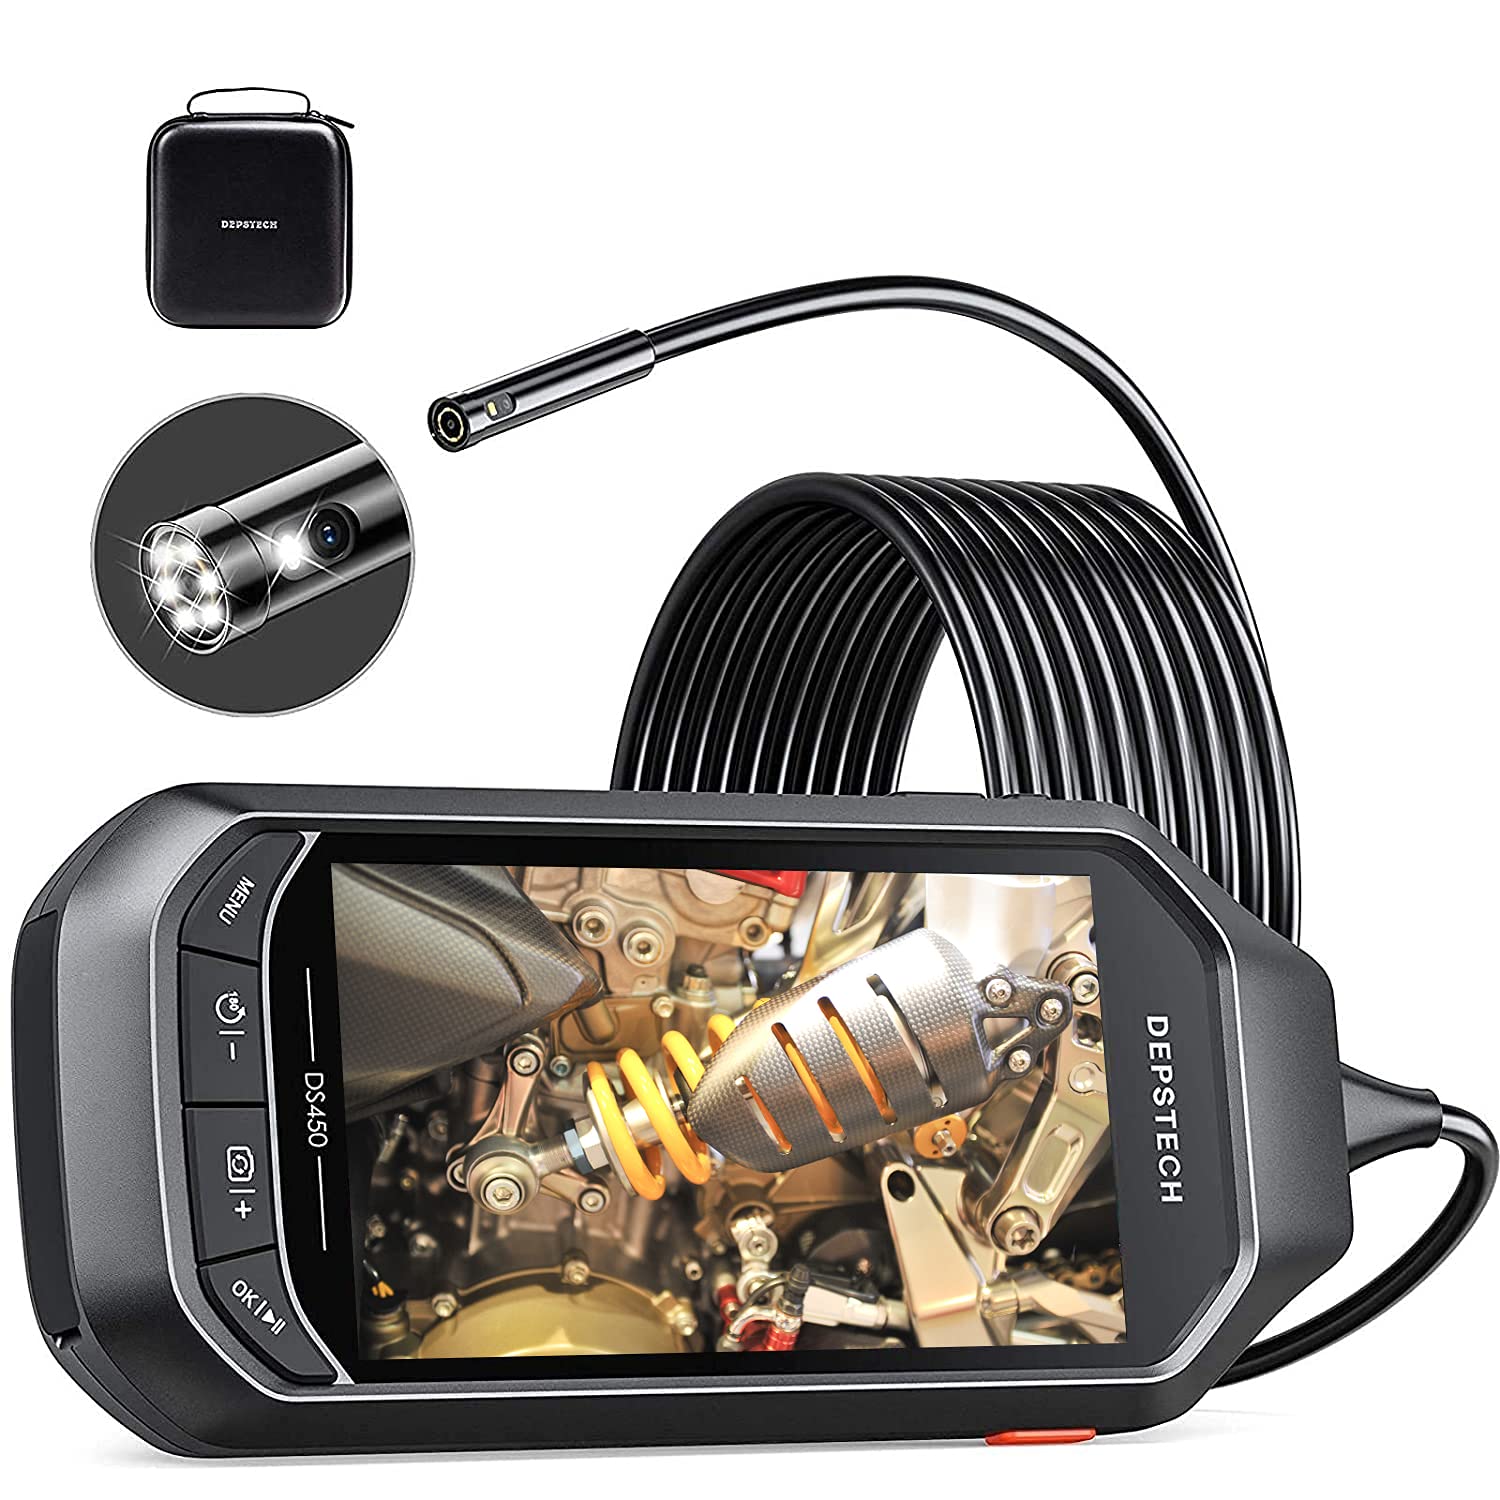 Triple Objektiv Industrie Endoskop Kamera 4,5 Inch IPS Bildschirm